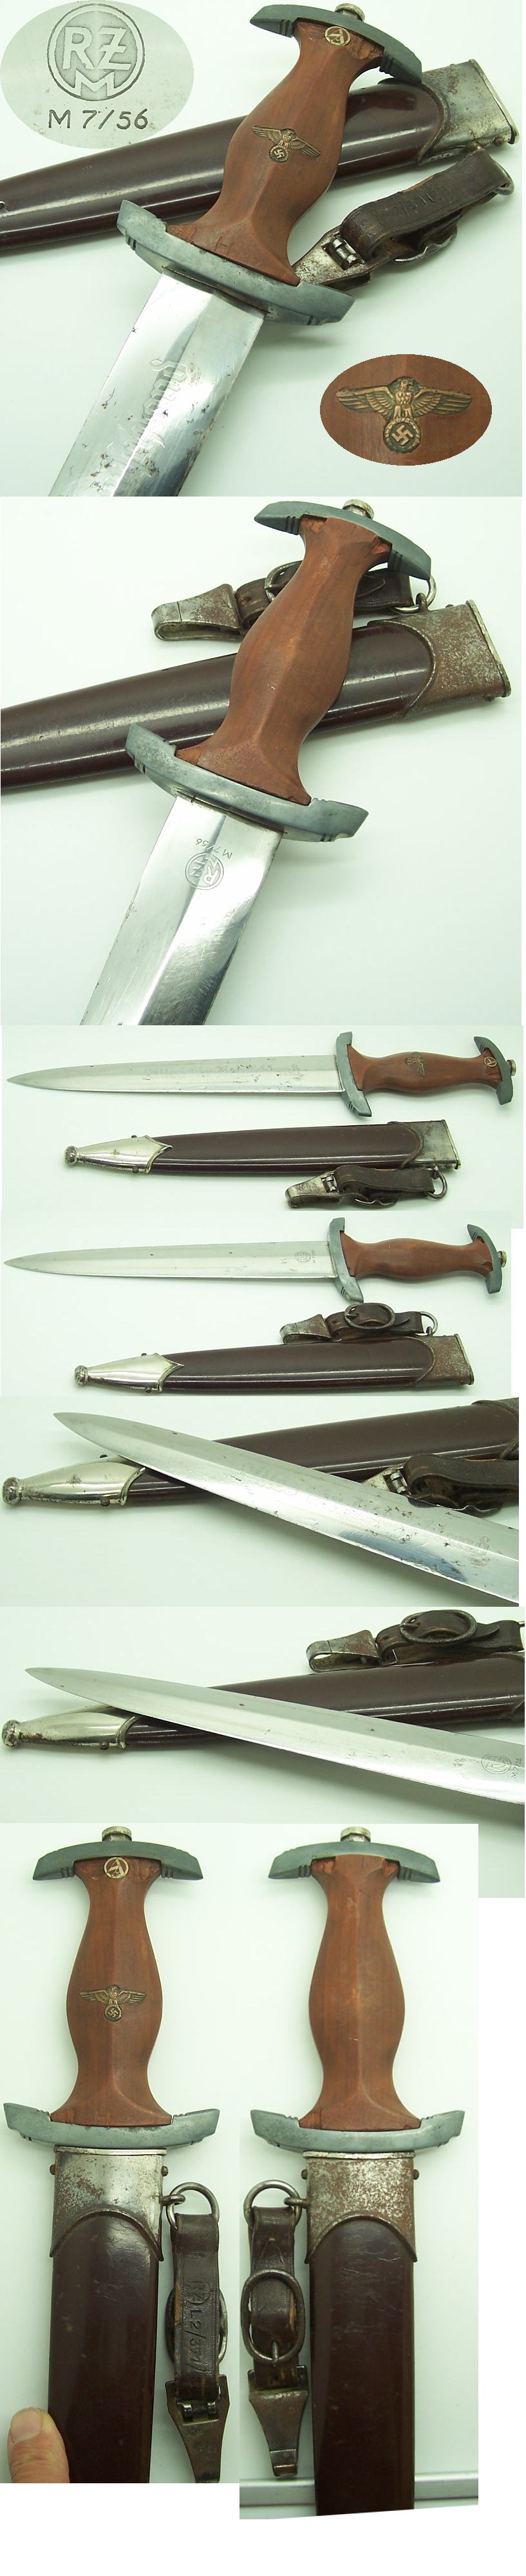 RZM 7/56 SA dagger by C. D. Schaaf